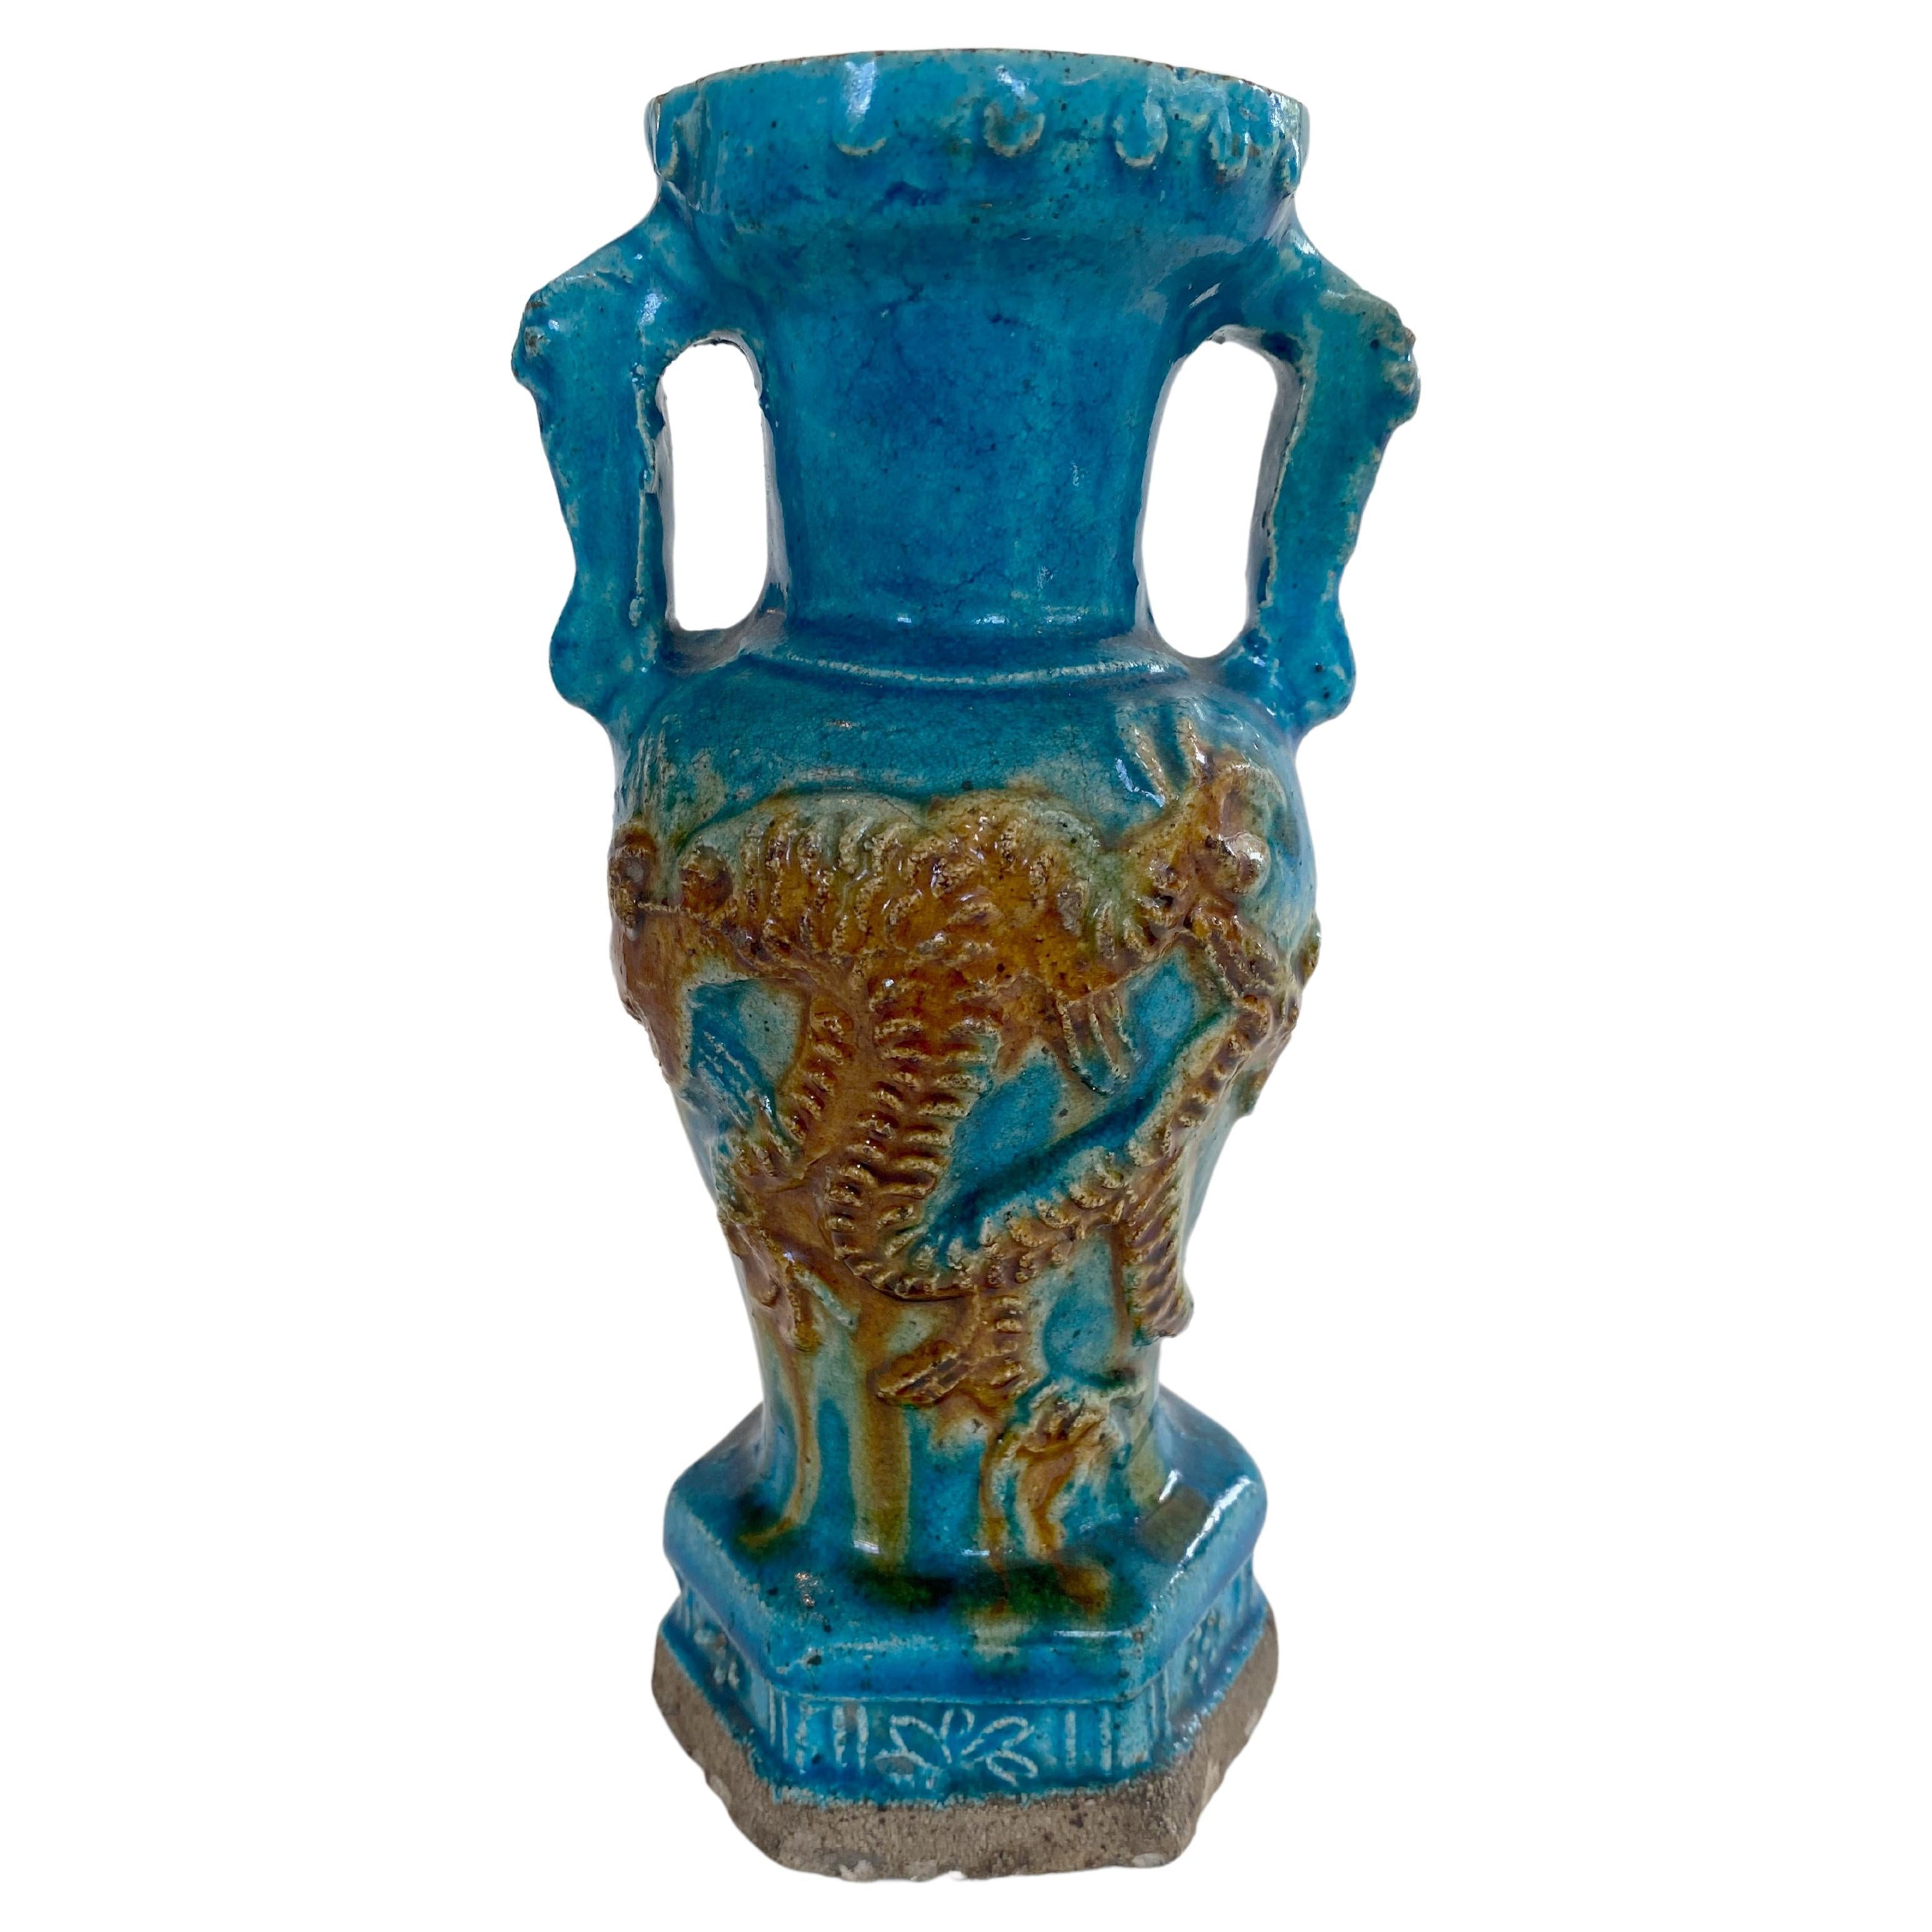 Vase aus der Ming-Dynastie mit lebhafter türkisfarbener Glasur